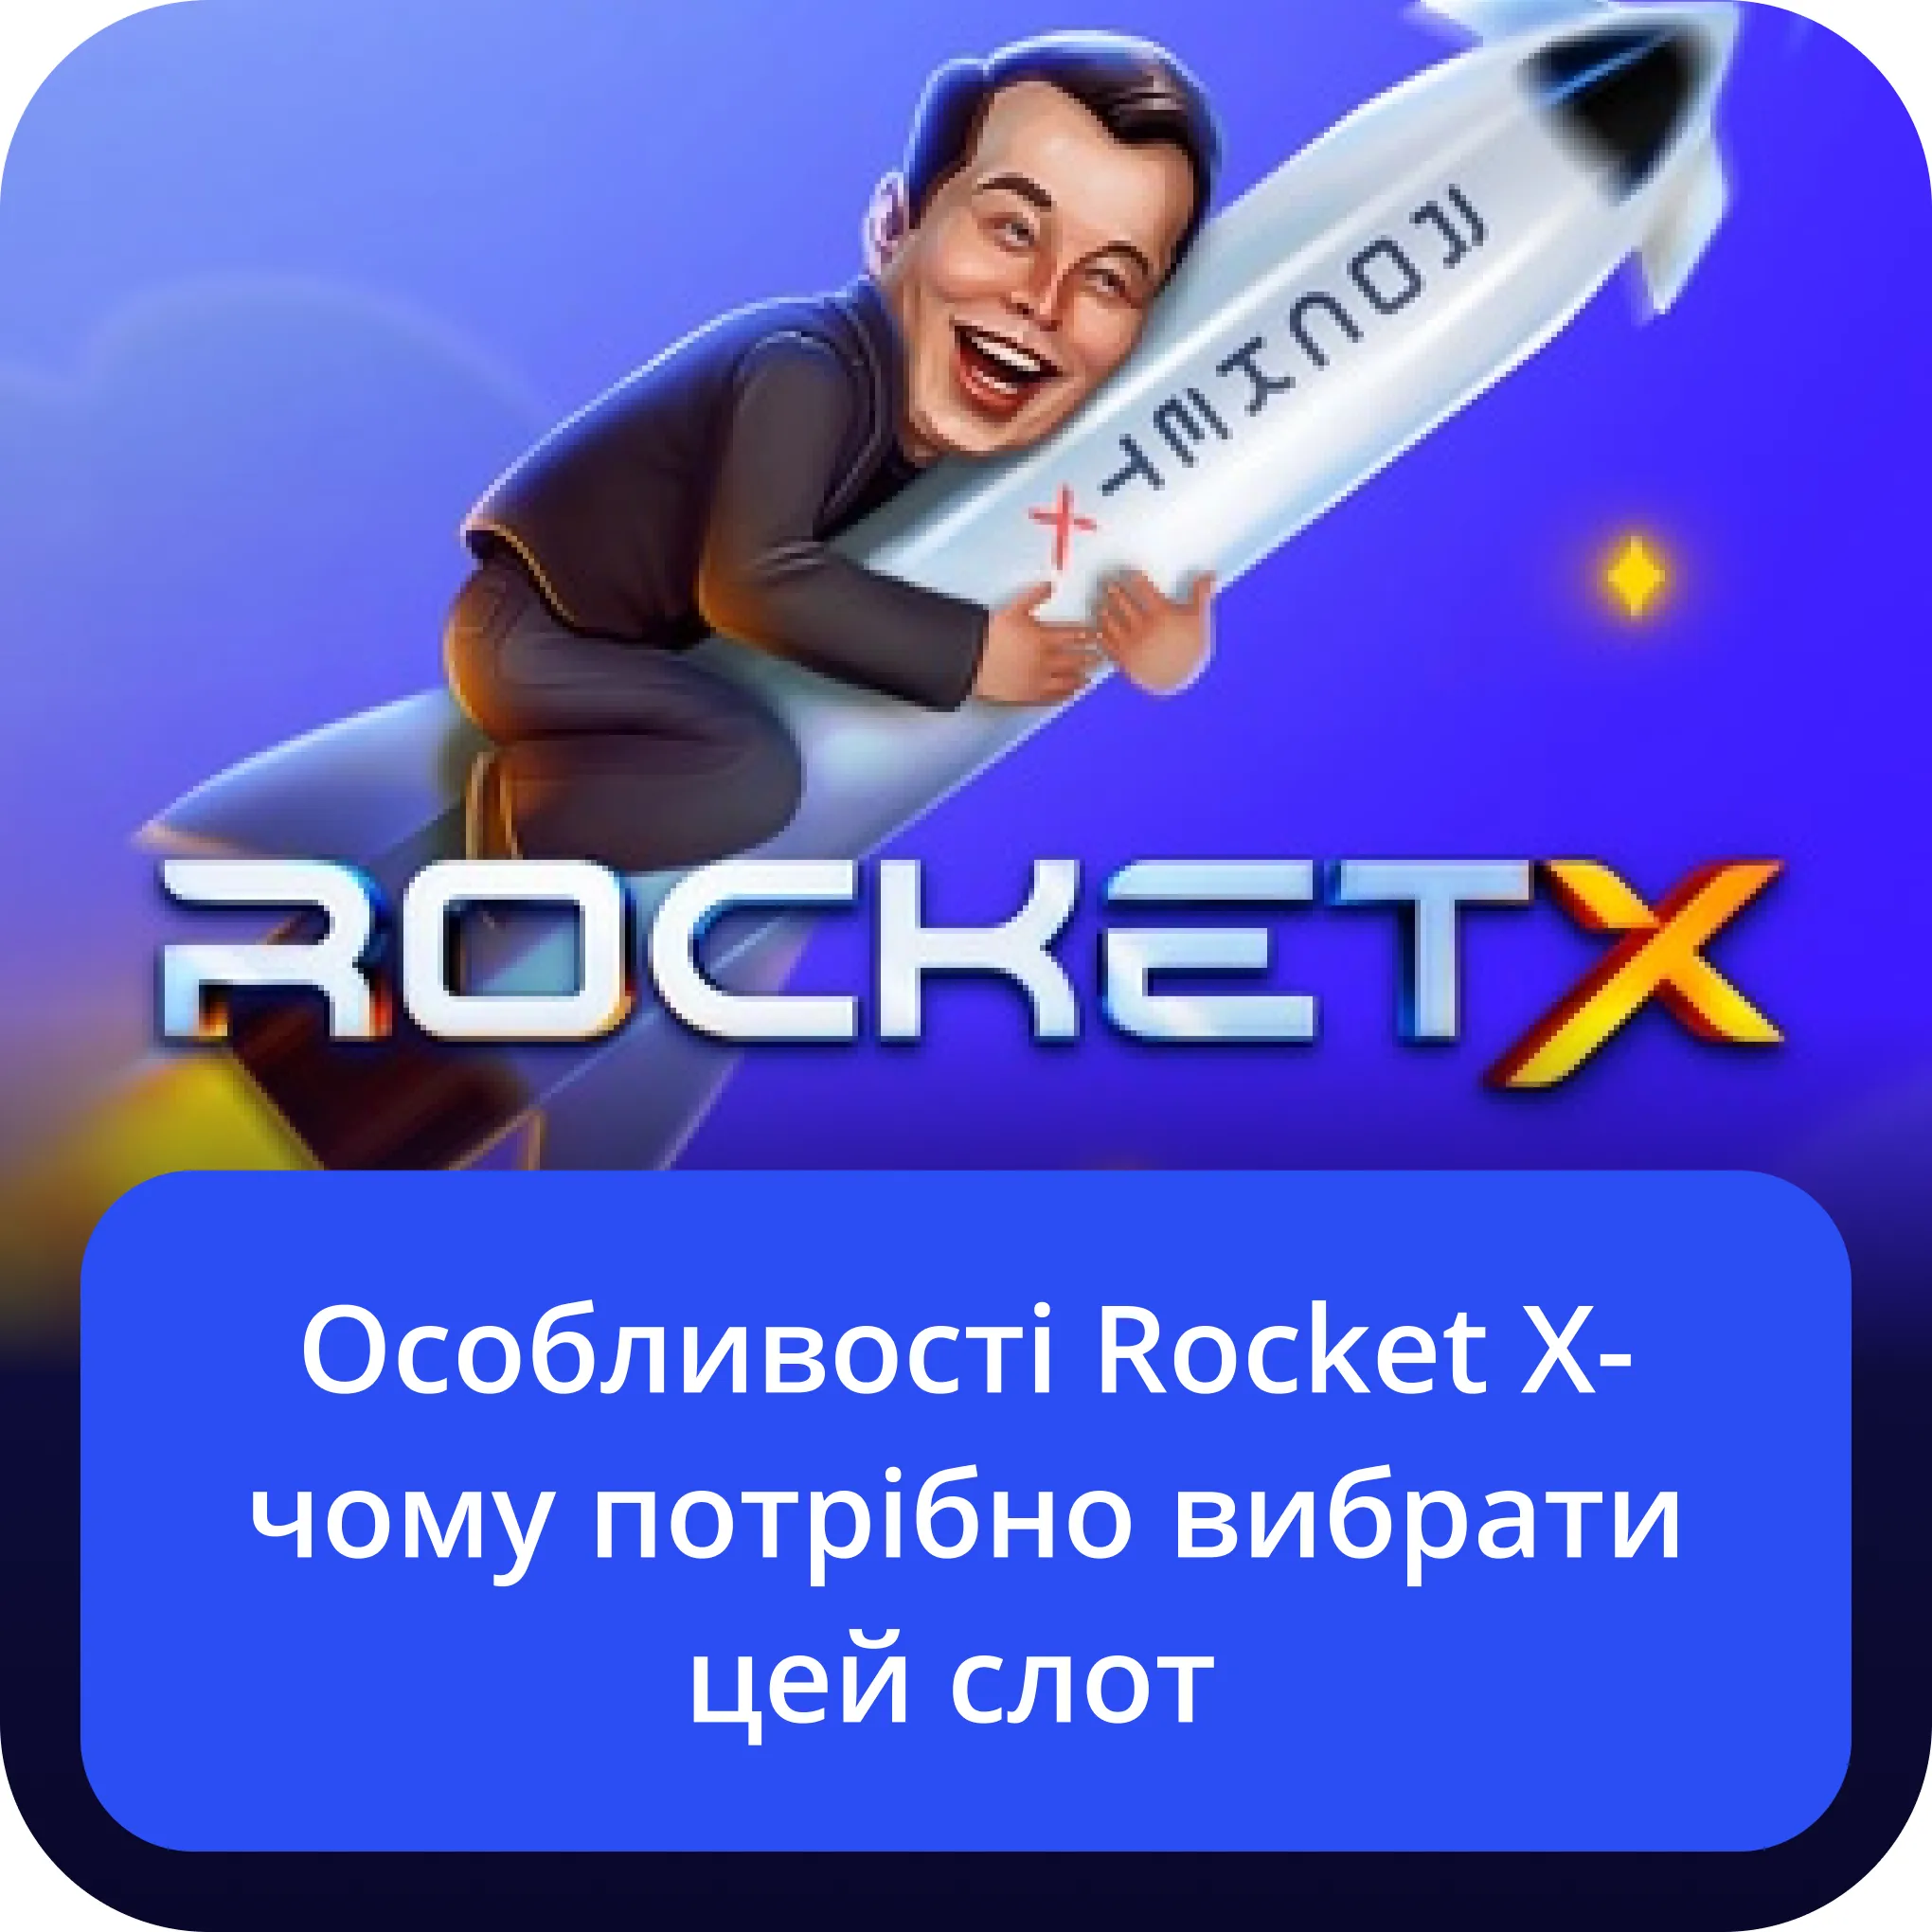 особливості rocket x